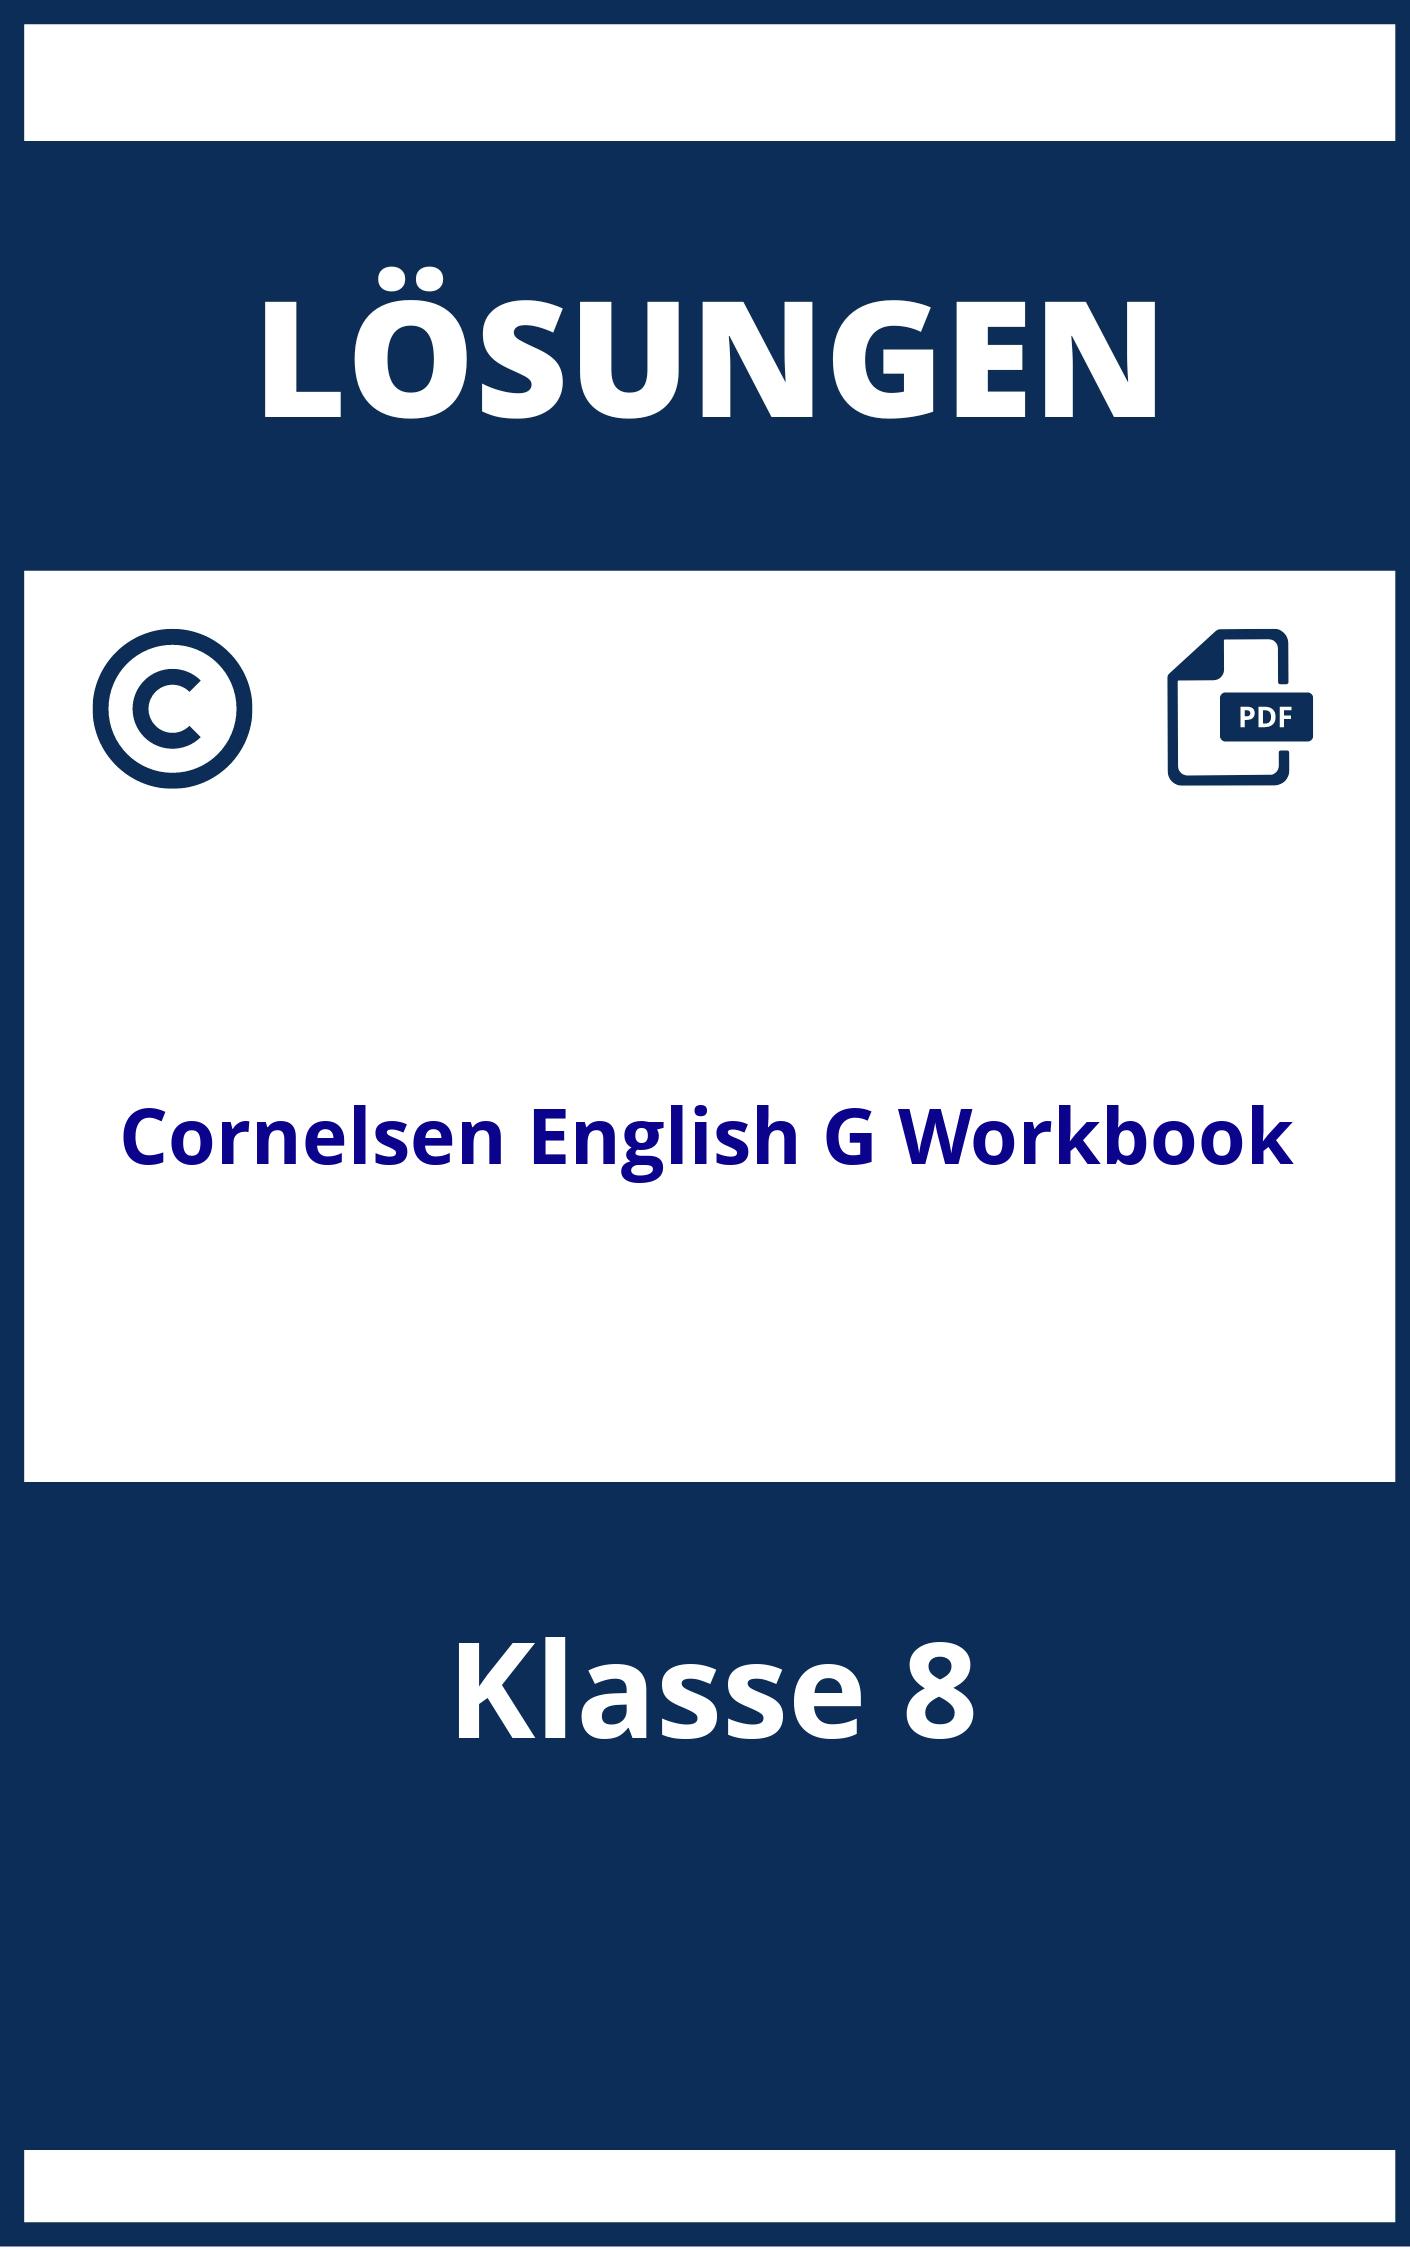 Cornelsen English G 21 Workbook Lösungen Klasse 8